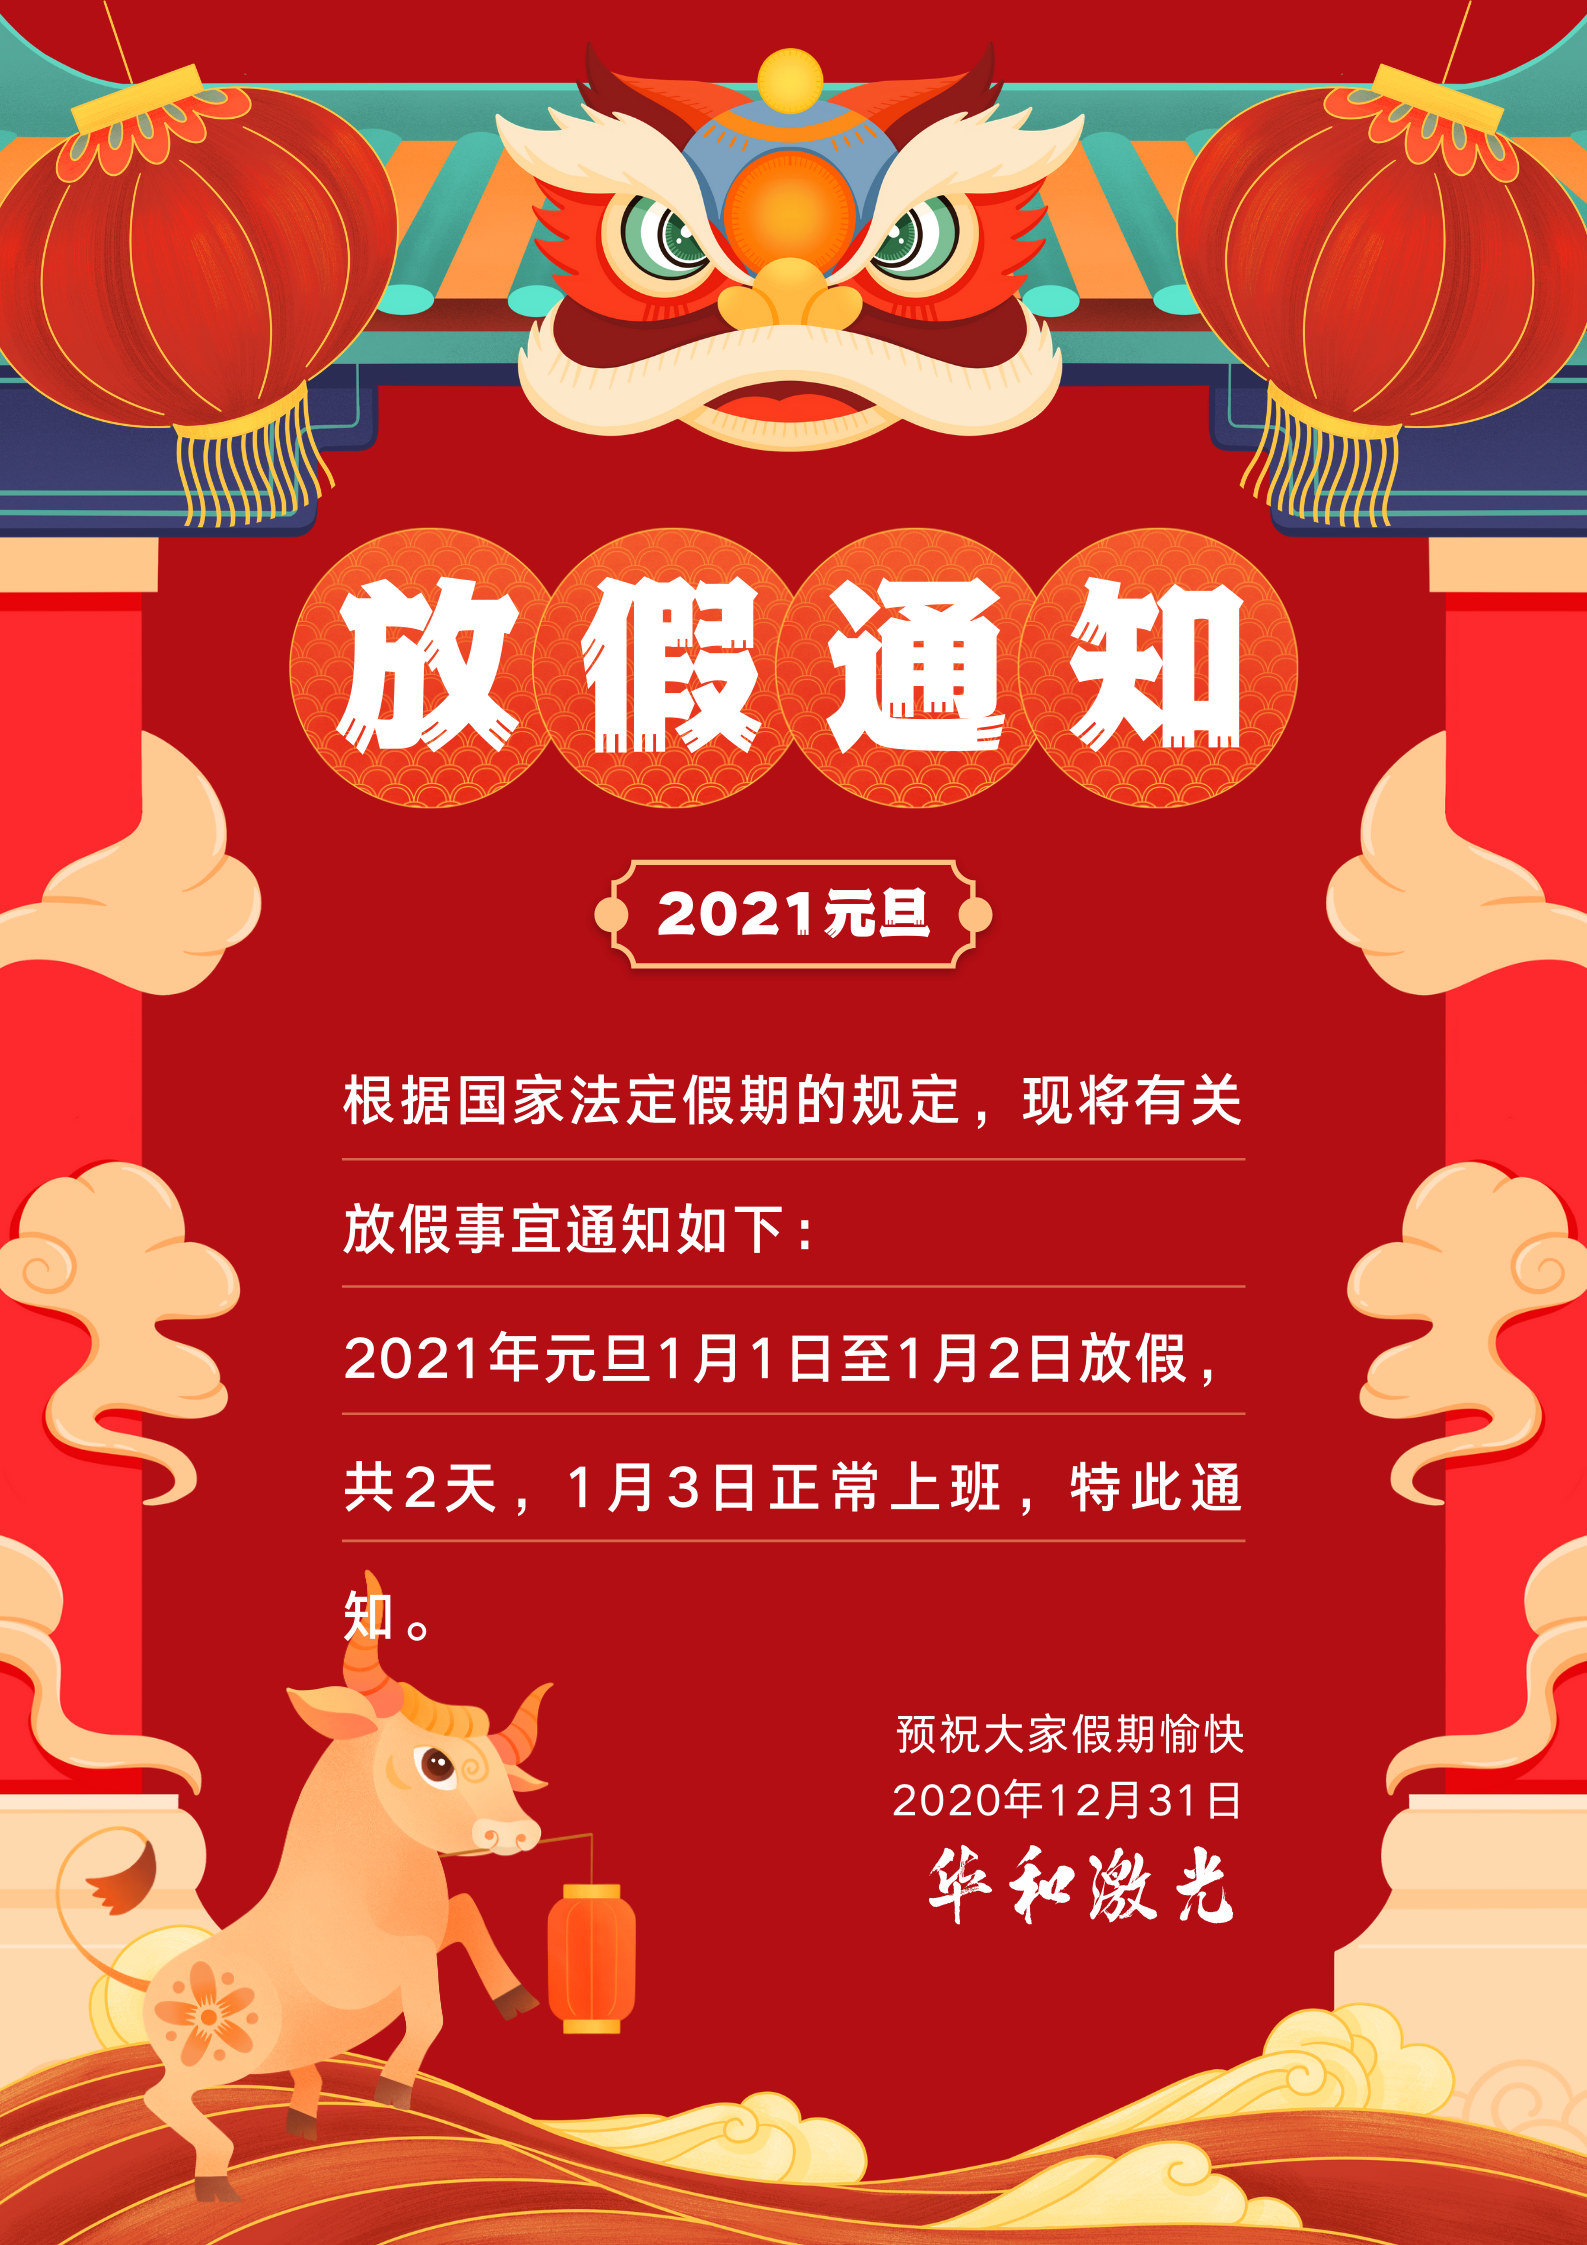 红蓝色你好2021简洁新年节日宣传中文海报 (1).png